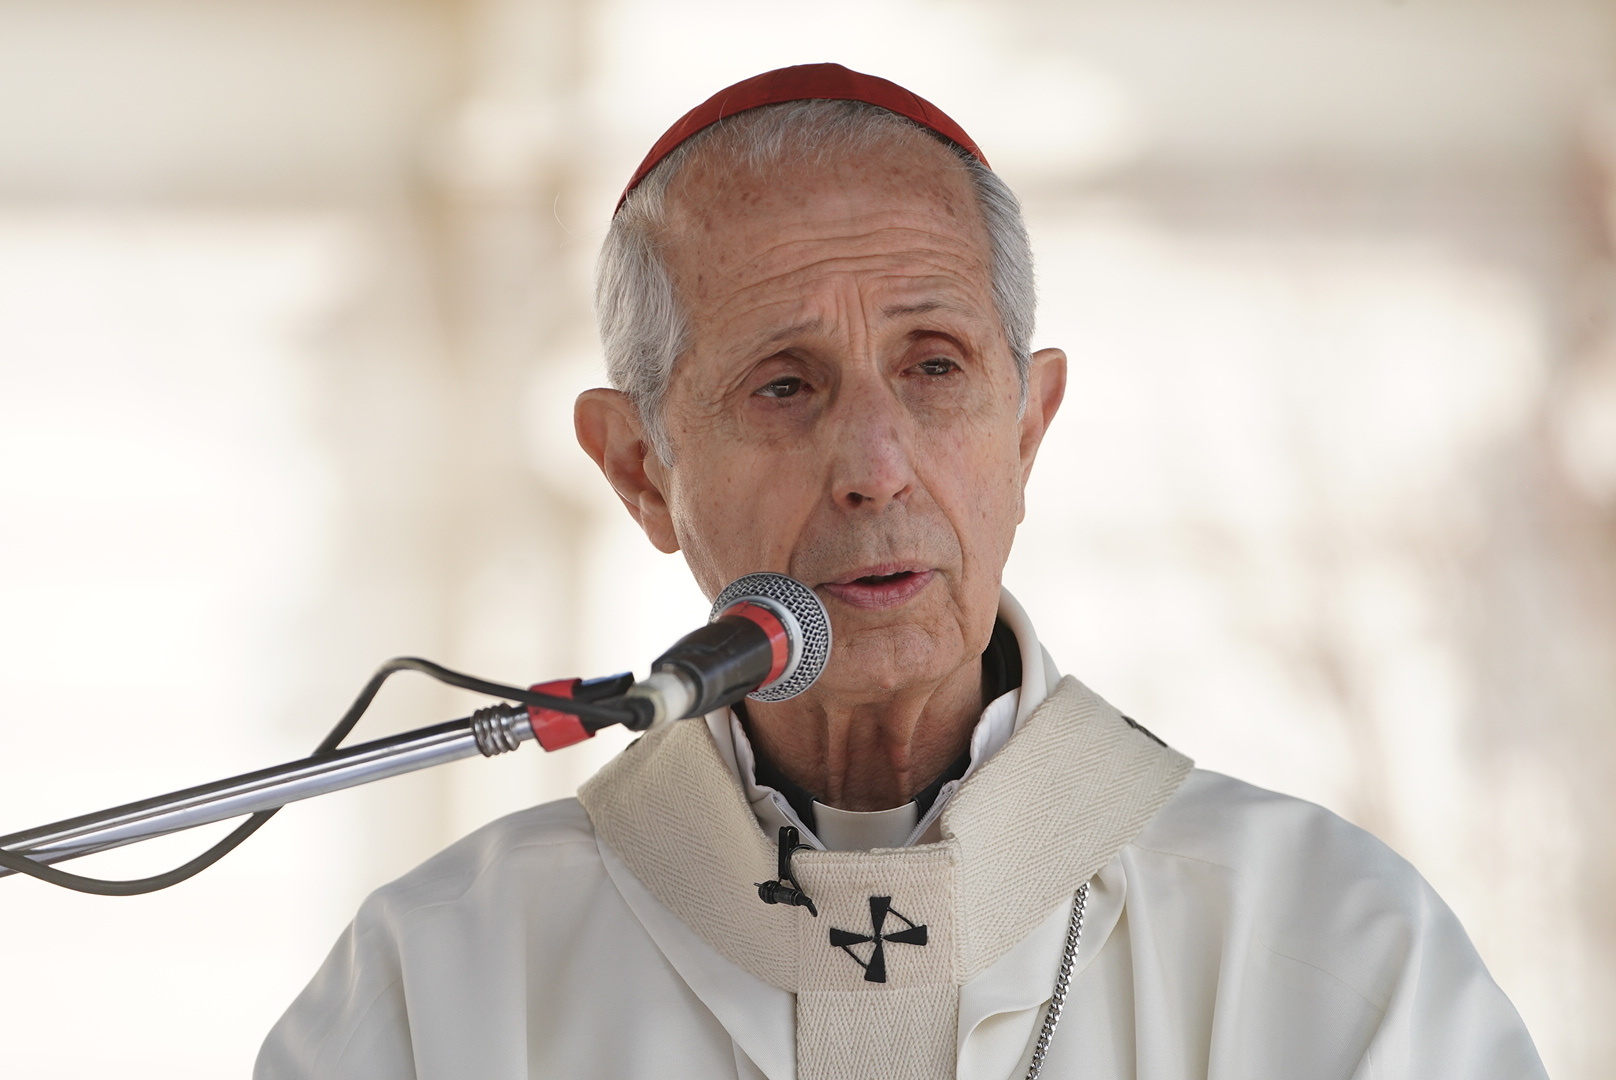 “Esta Argentina nos duele a todos”, expresó el cardenal Poli desde el púlpito durante la homilía en el santuario de San Cayetano